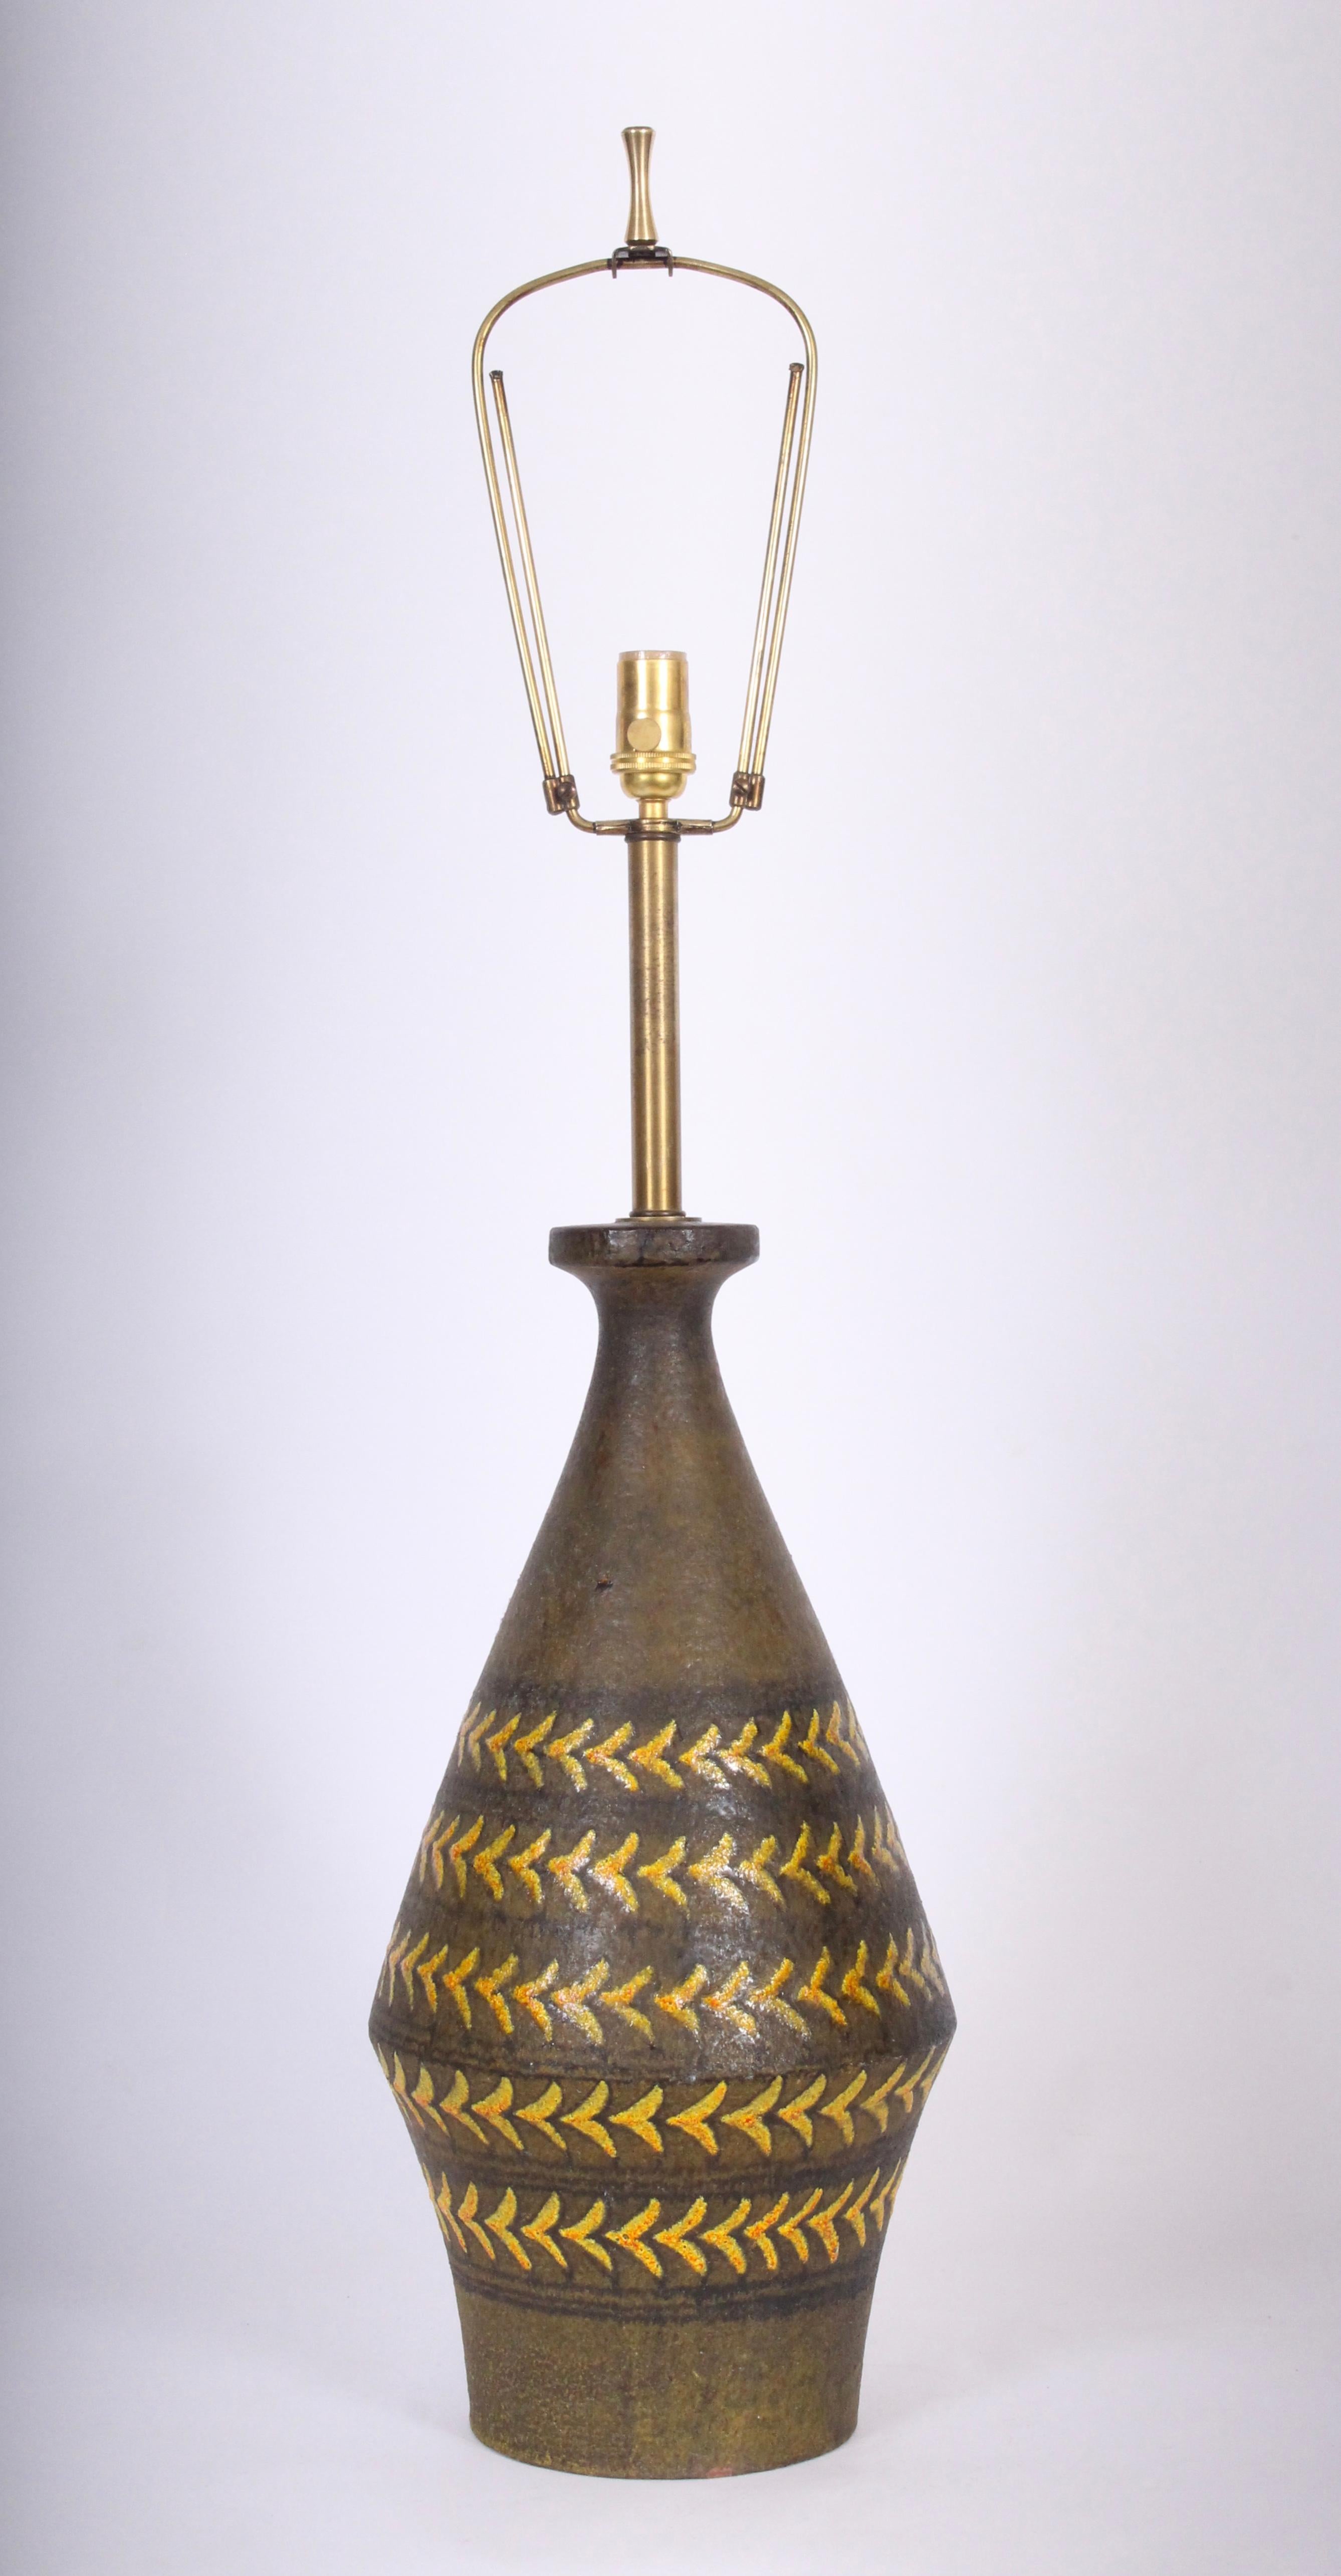 Monumentale lampe de table Aldo Londi for Bitossi en poterie d'art émaillée fabriquée à la main, années 1960. Forme caractéristique en brun foncé réfléchissant, peinte à la main avec de fines rayures verticales marron et des accents de flèche jaune,